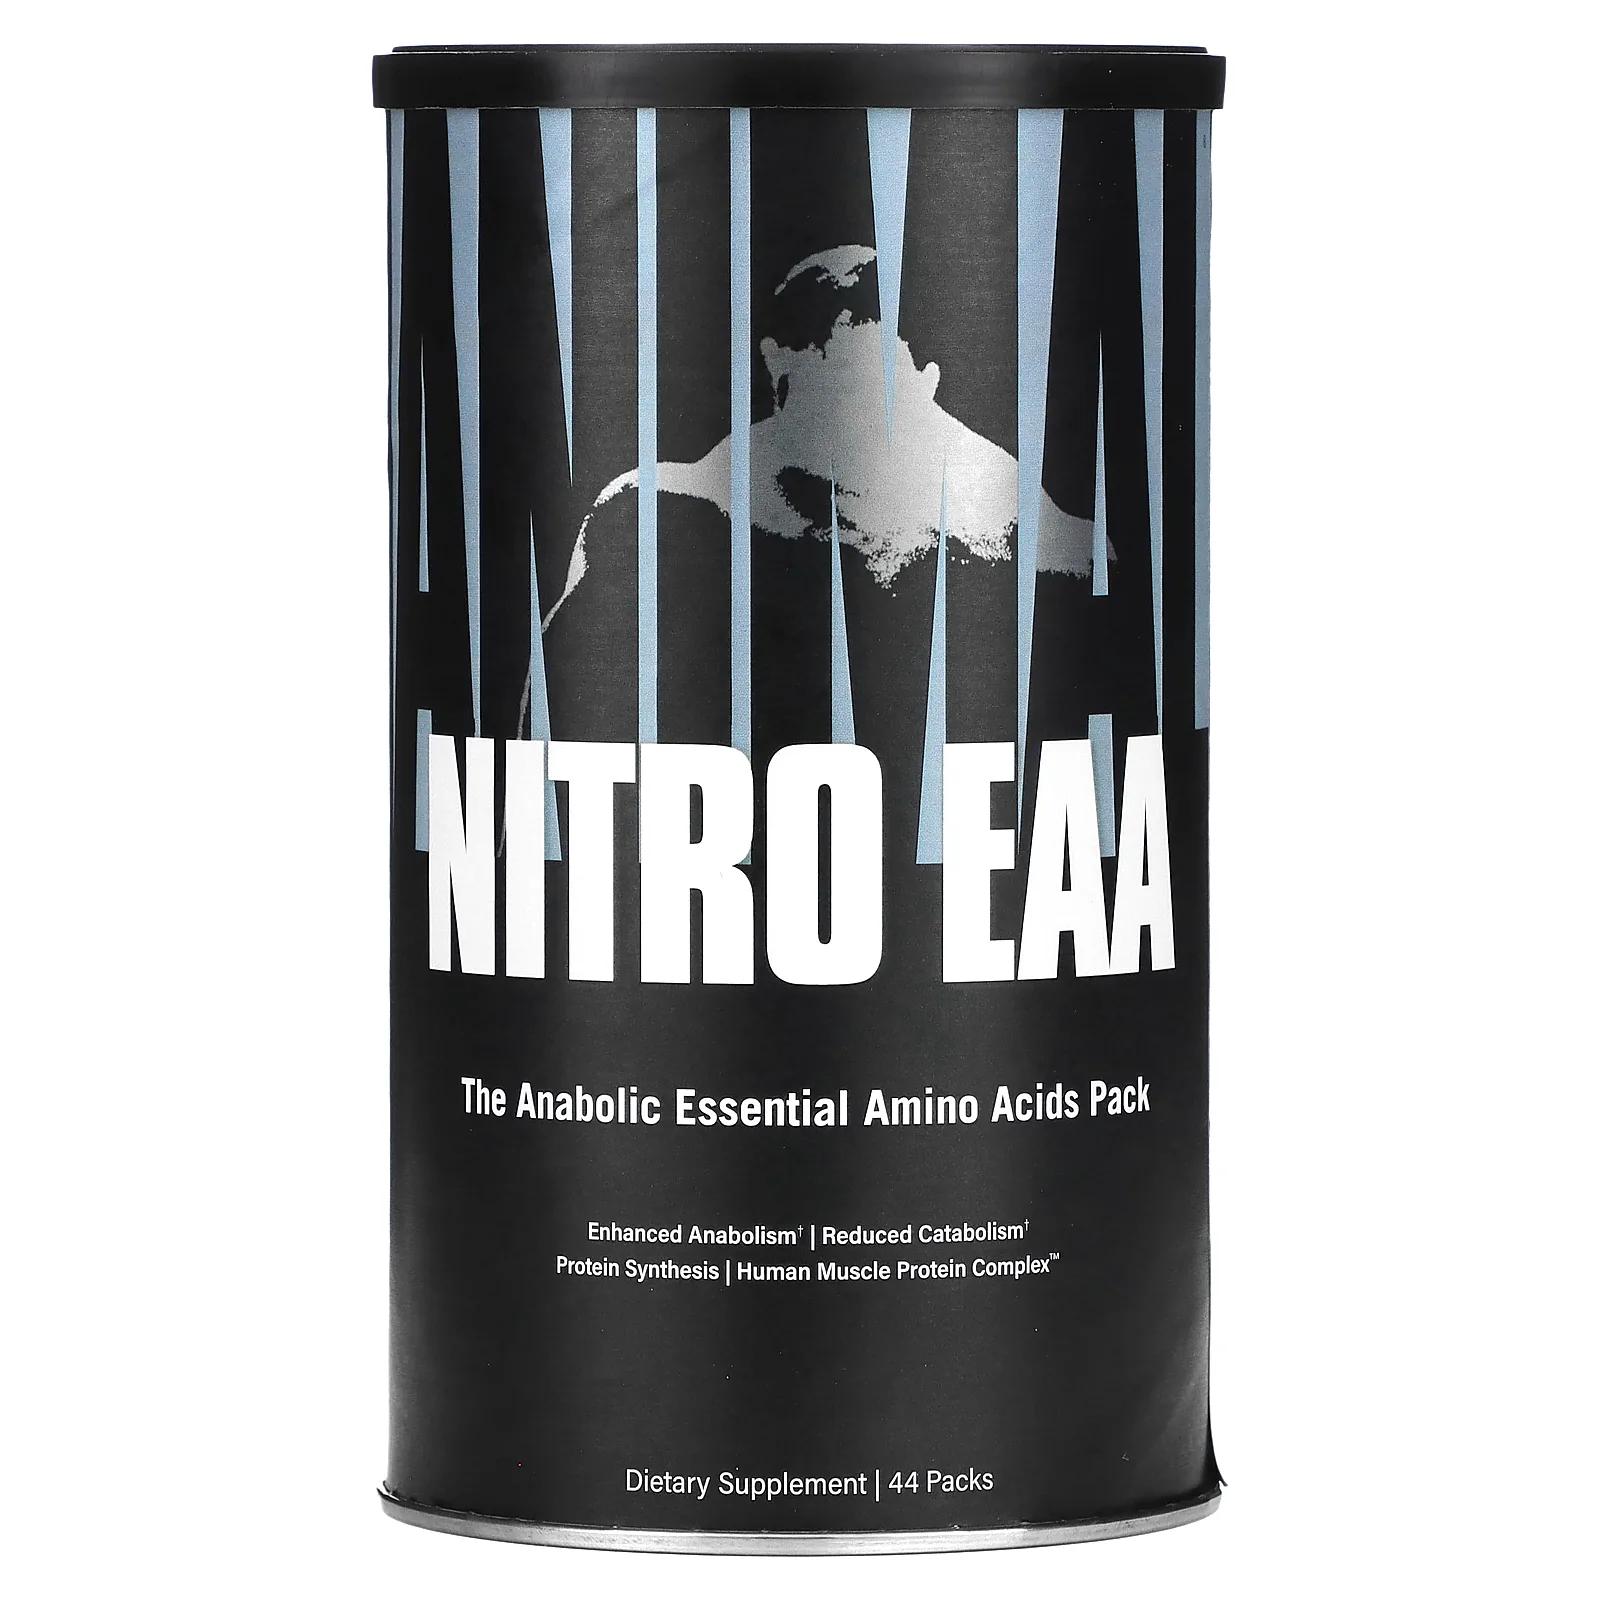 Universal Nutrition Animal Nitro базовый анаболический пакет незаменимых аминокислот 44 упаковок universal nutrition animal nitro базовый анаболический пакет незаменимых аминокислот 44 упаковок